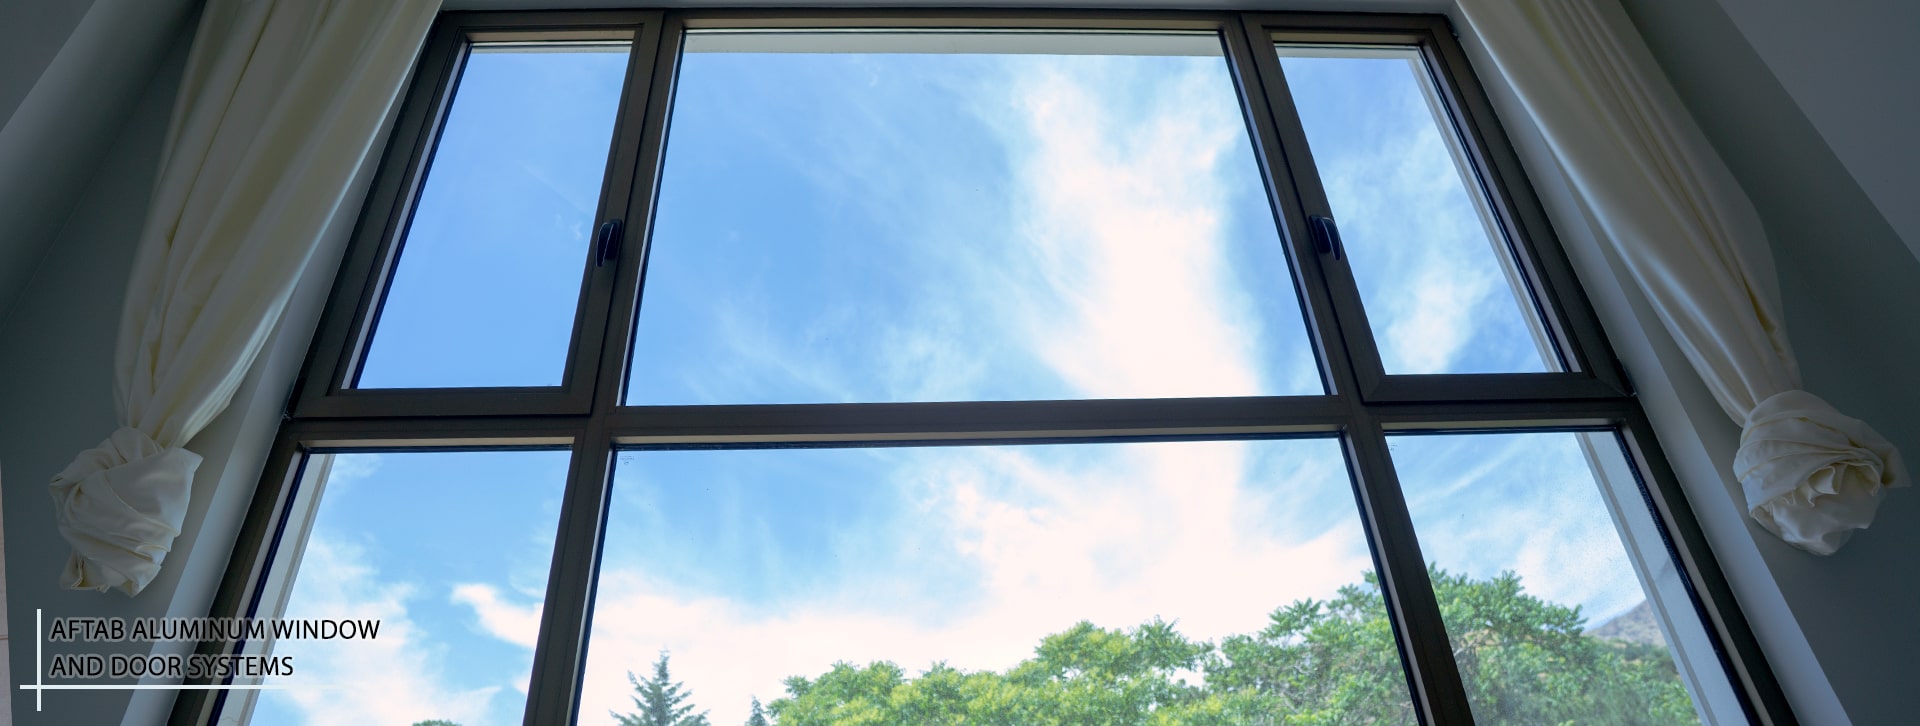 درب آلومینیومی نگارین پنجره آفتاب